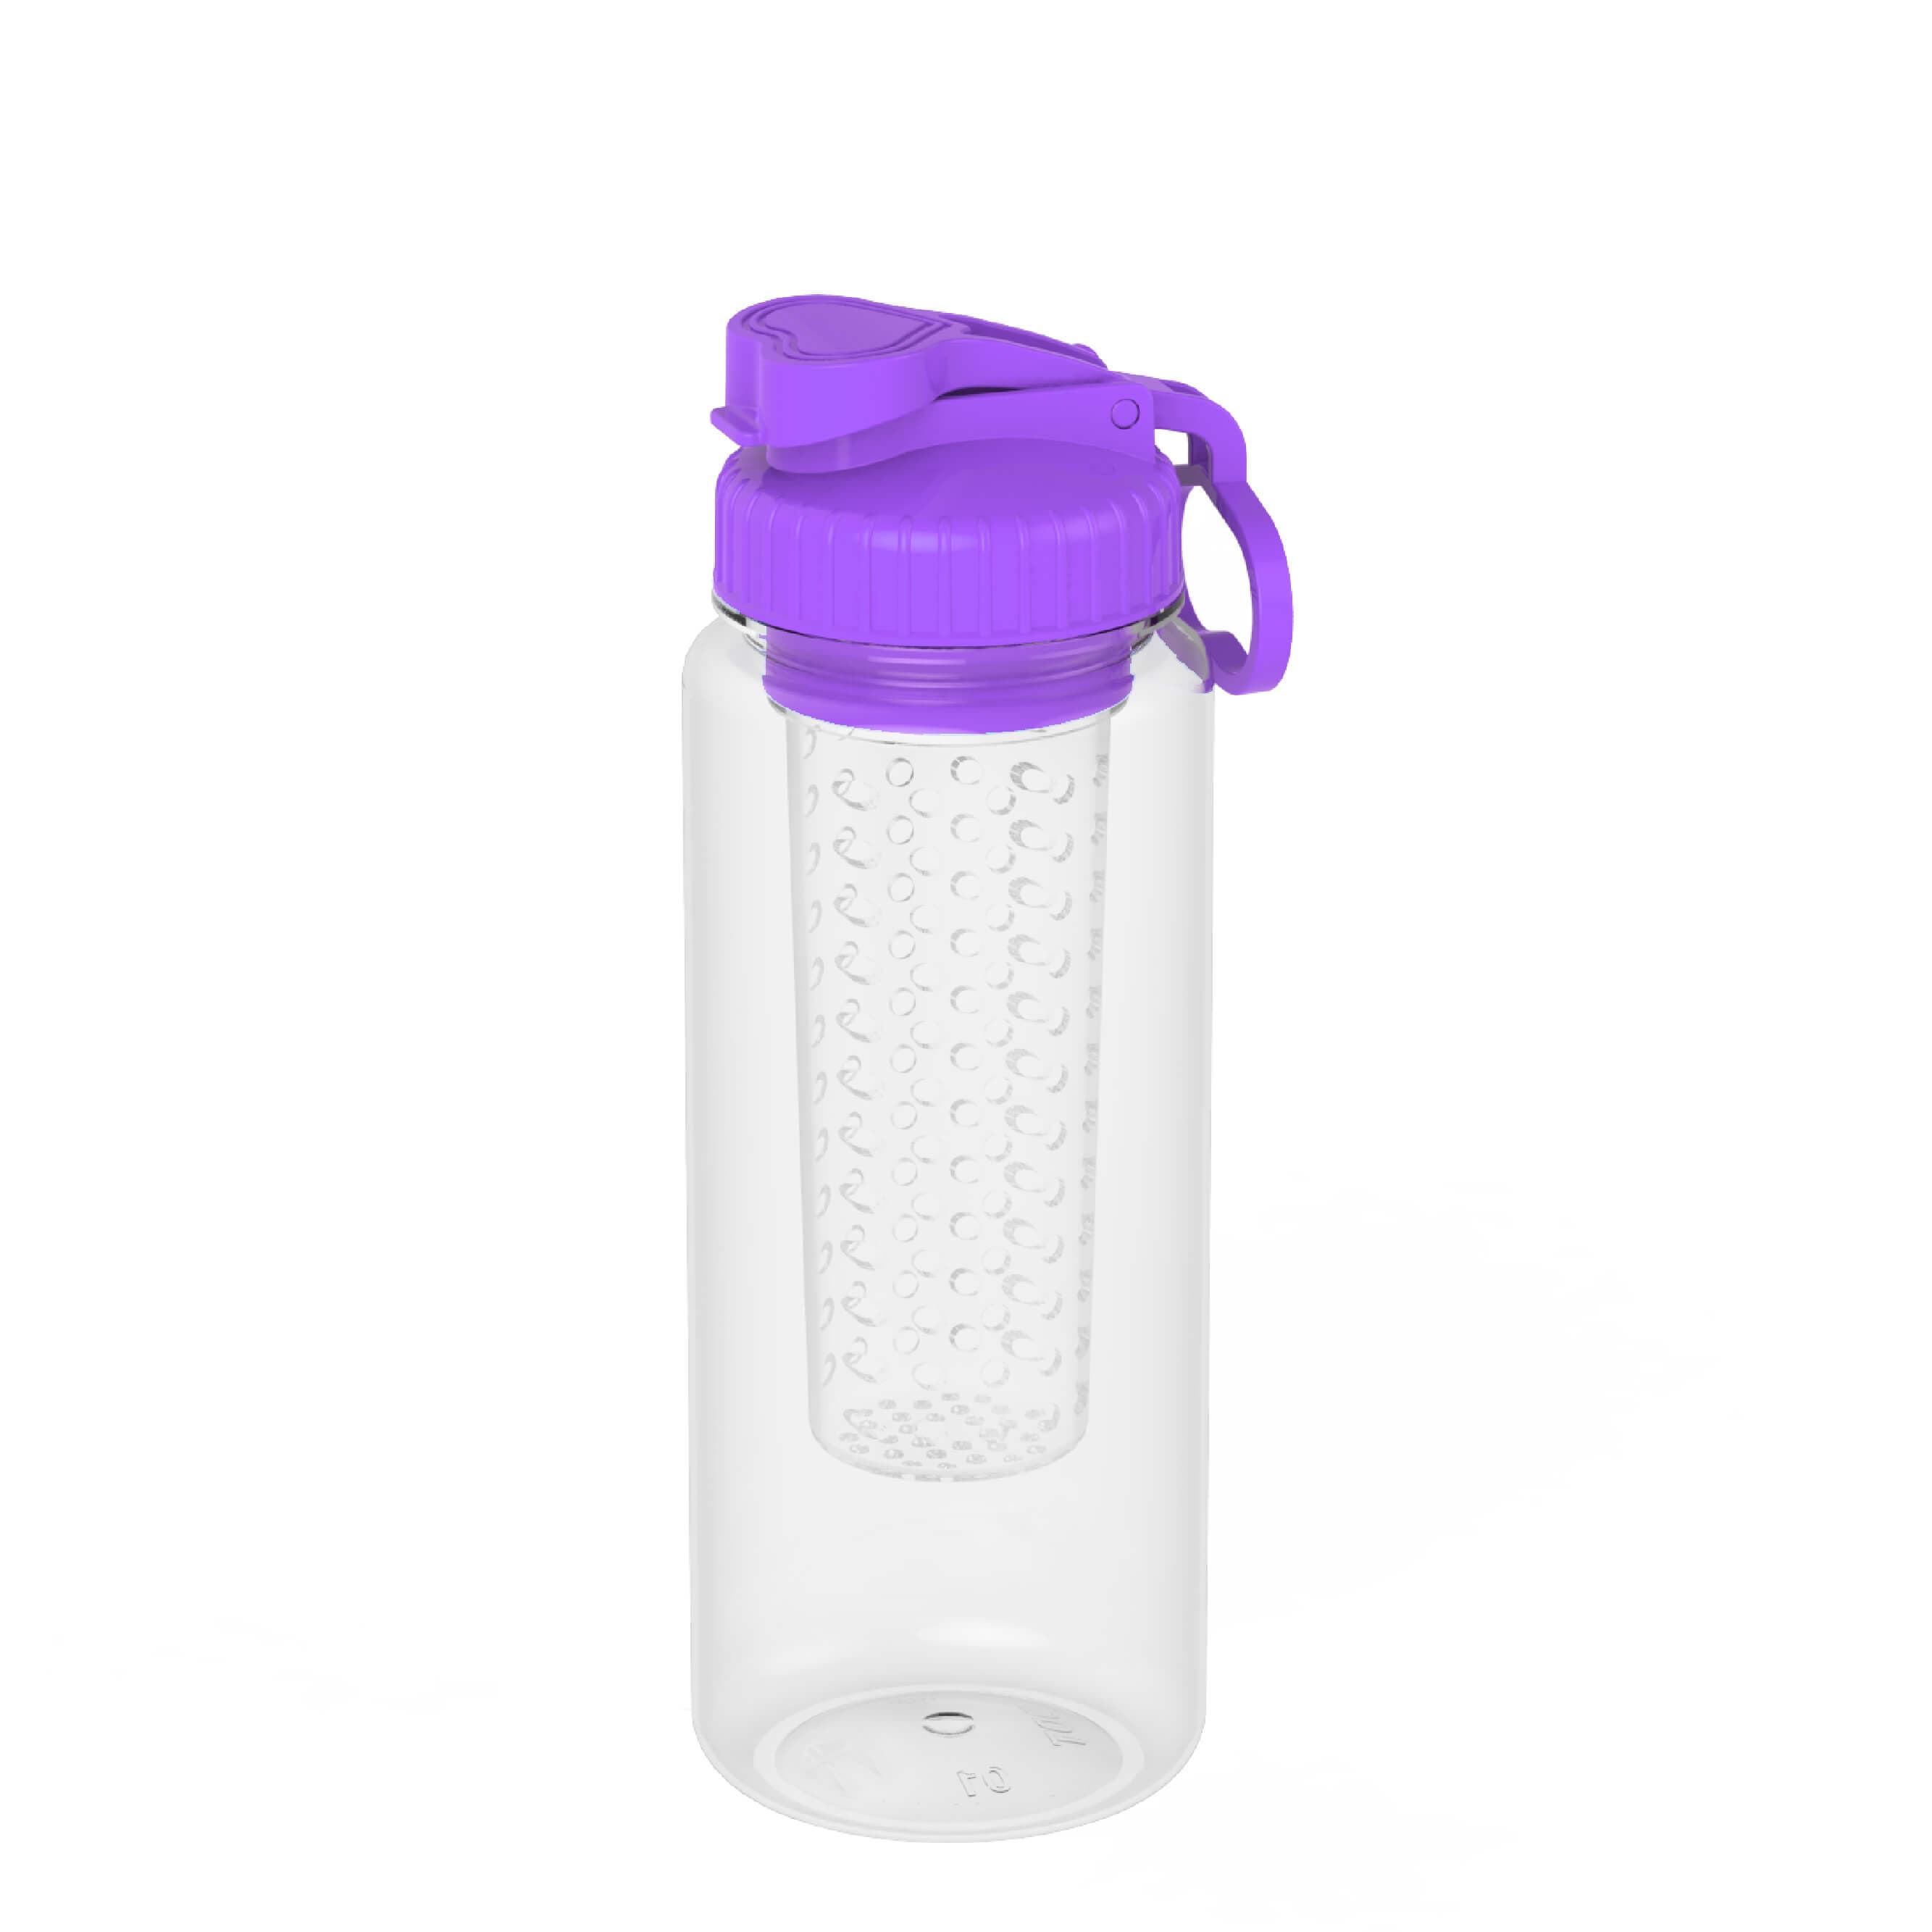 Household _ Water Bottle _ Detox Water Bottle 600ML